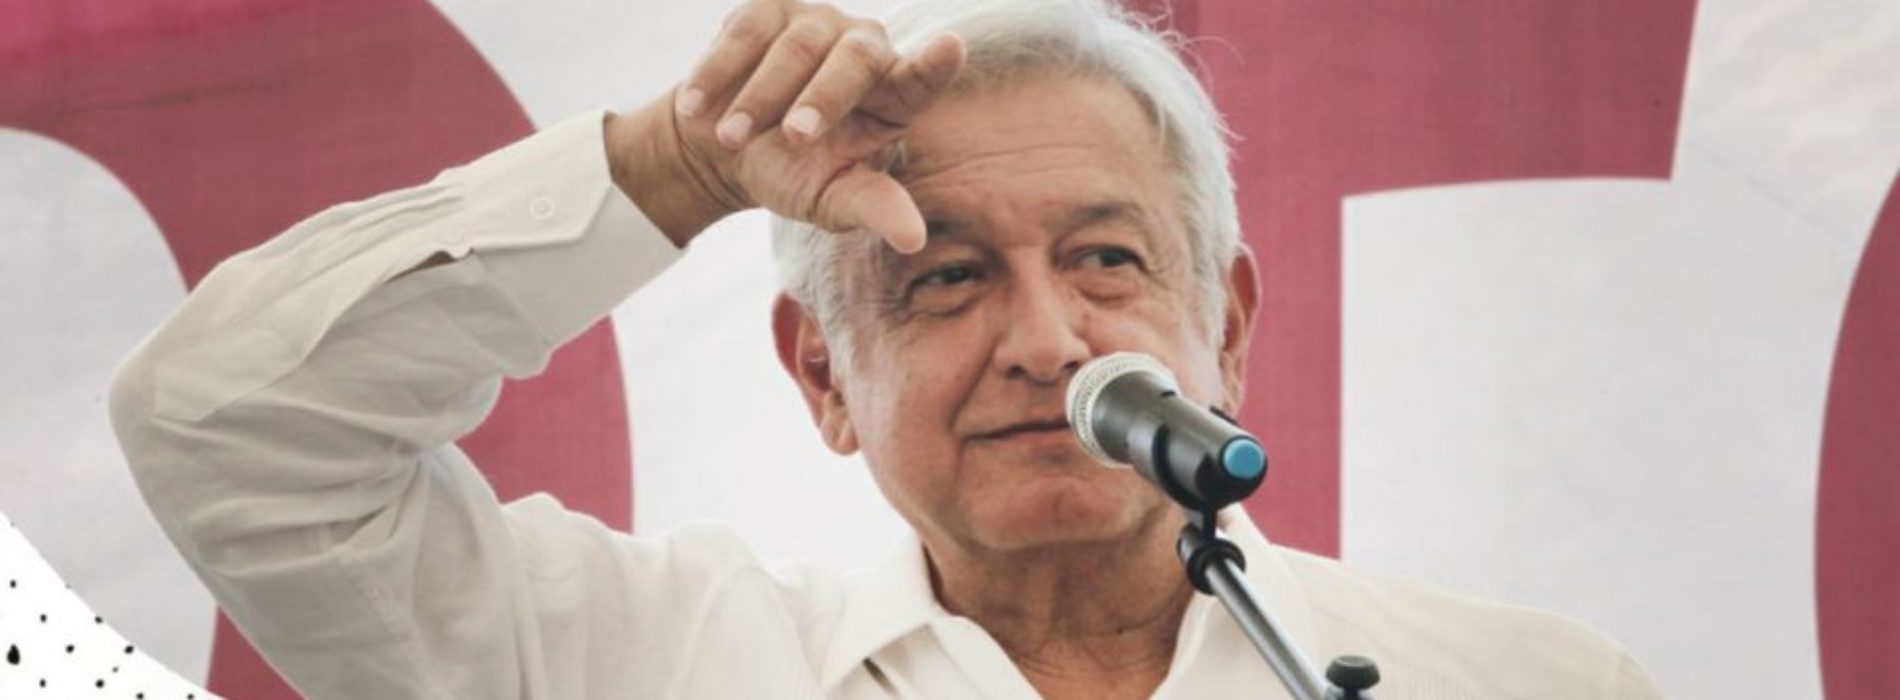 Verificado.mx: ¿El Lago de Texcoco se hunde un metro al año,
como dice López Obrador?